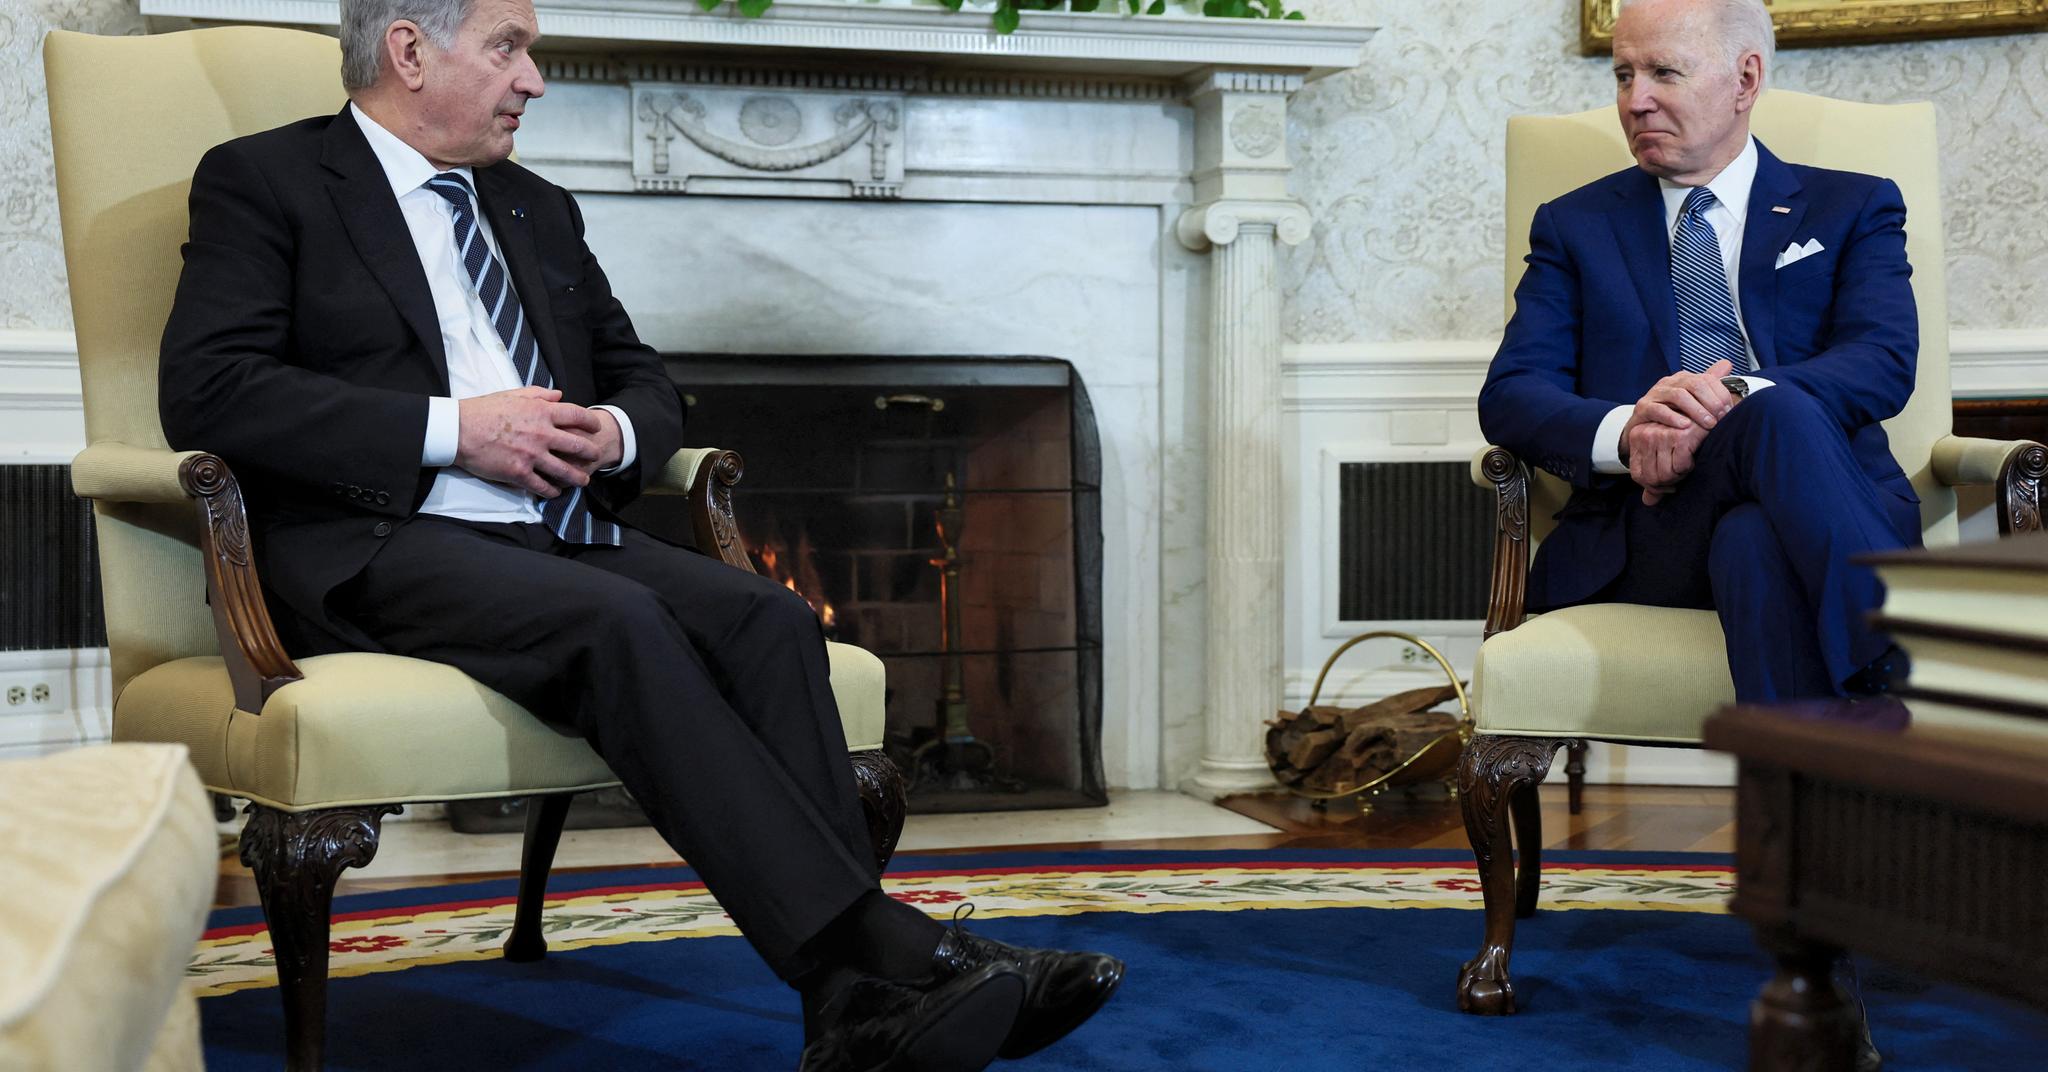 Den finske presidenten Sauli Niinistö har hatt tett kontakt med lederne for de store Nato-landene de siste ukene, blant annet USAs president Joe Biden. Hva de snakket om rundt eventuelt finsk Nato-medlemskap da Niinistö besøkte Det hvite hus 4. mars, er ikke kjent. 